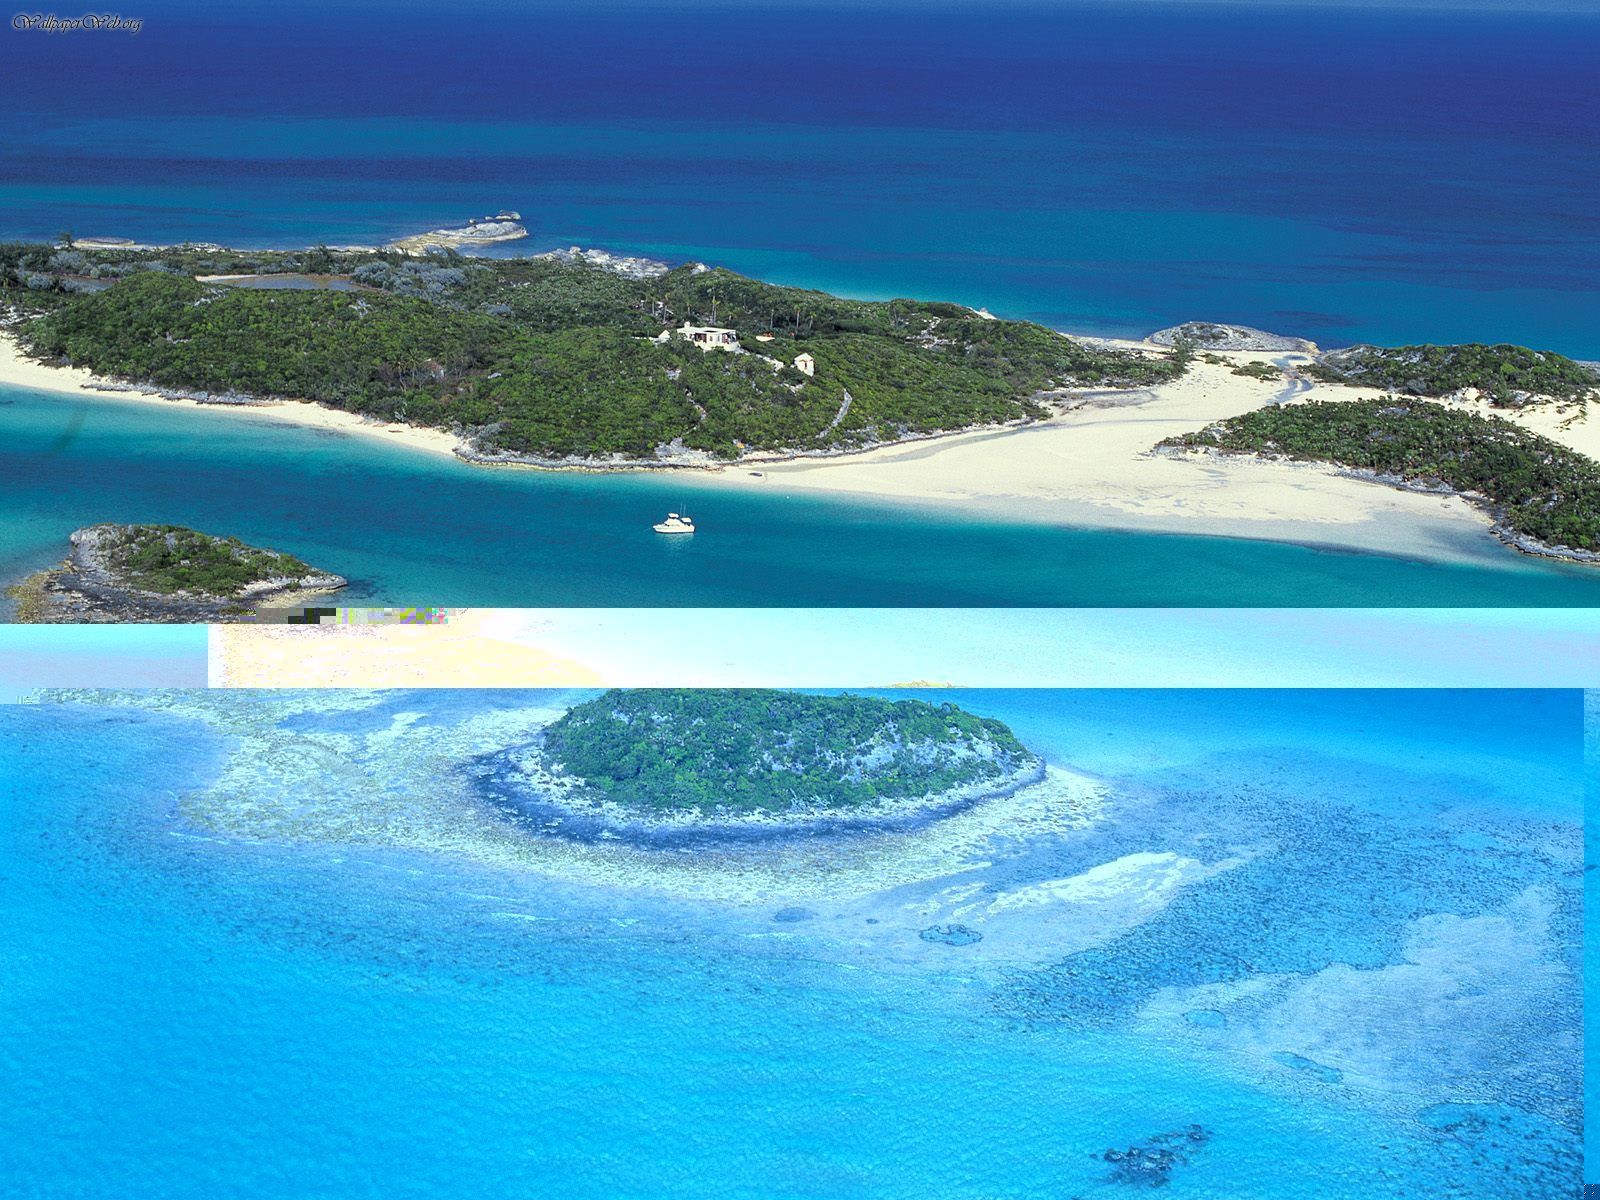 Exuma Cays Bahamas